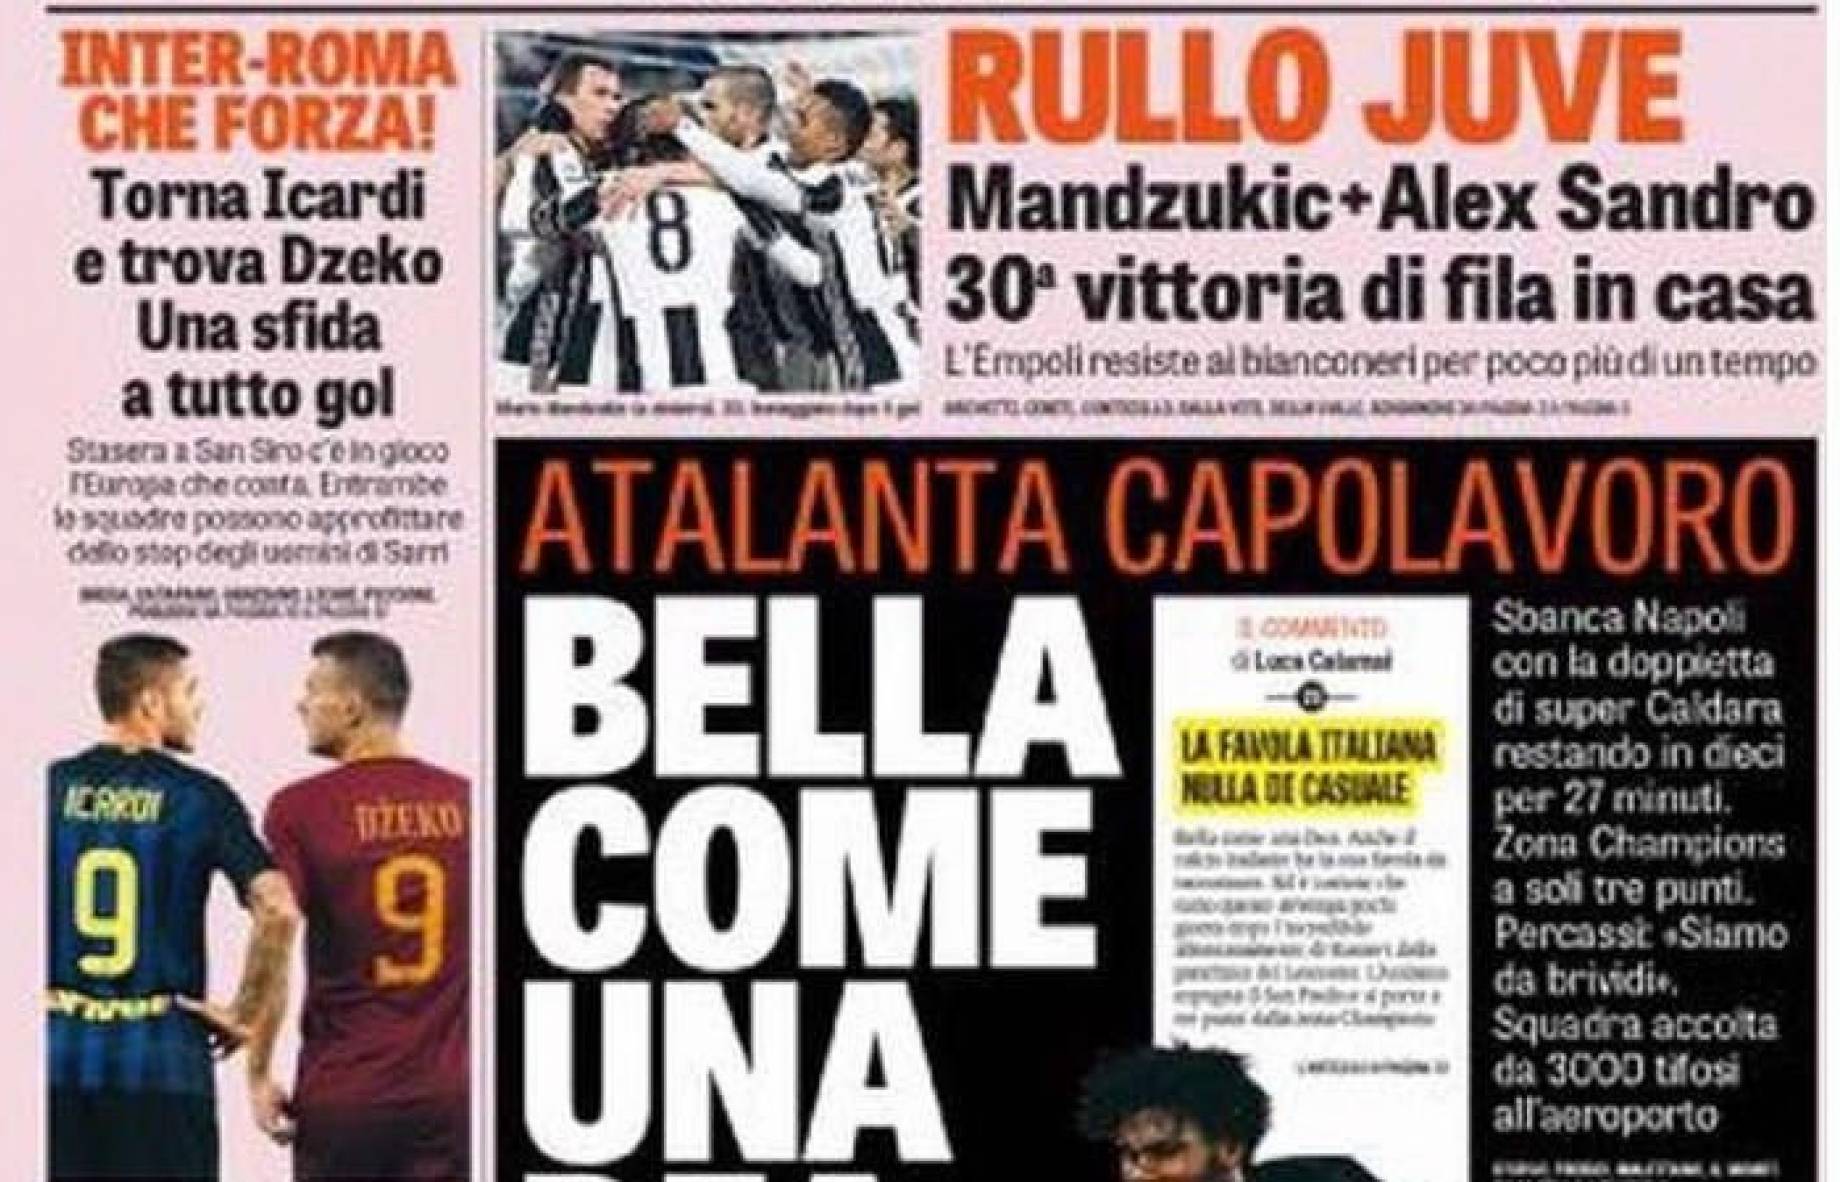 "Rullo Juve sempre più su", Atalanta "bella come una dea" e altro ... - GianlucaDiMarzio.com